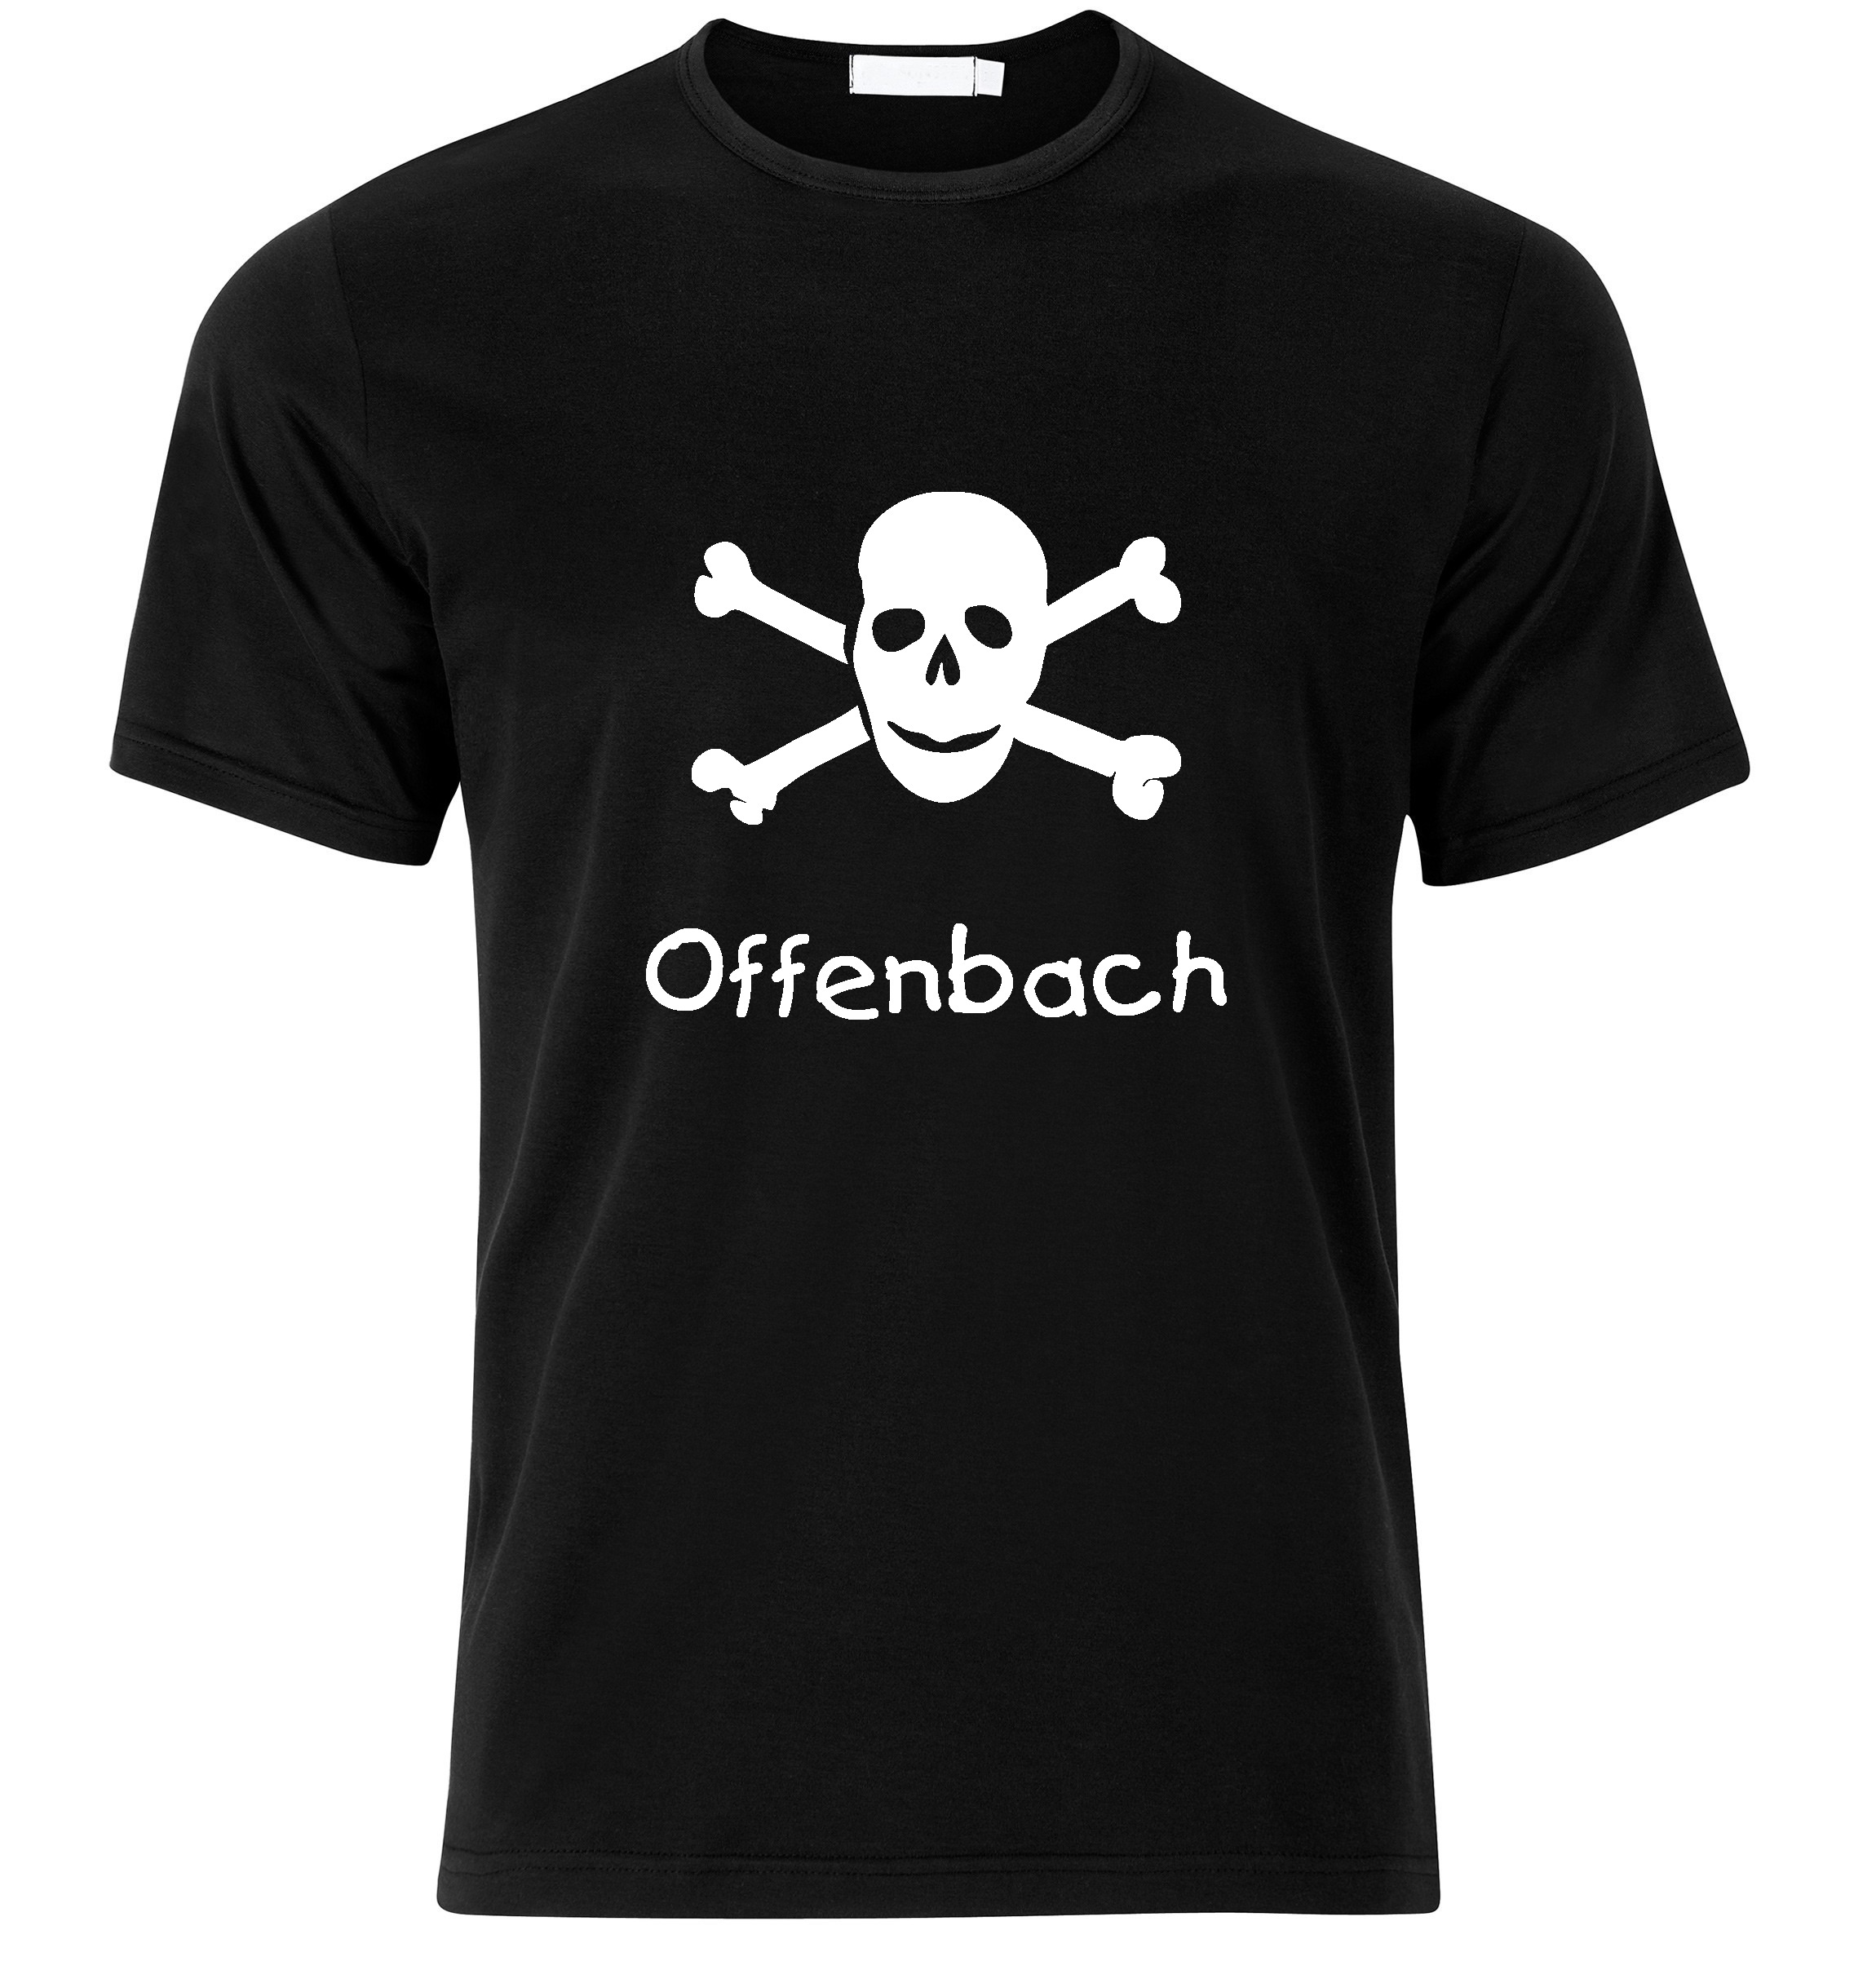 T-Shirt Offenbach Jolly Roger, Totenkopf